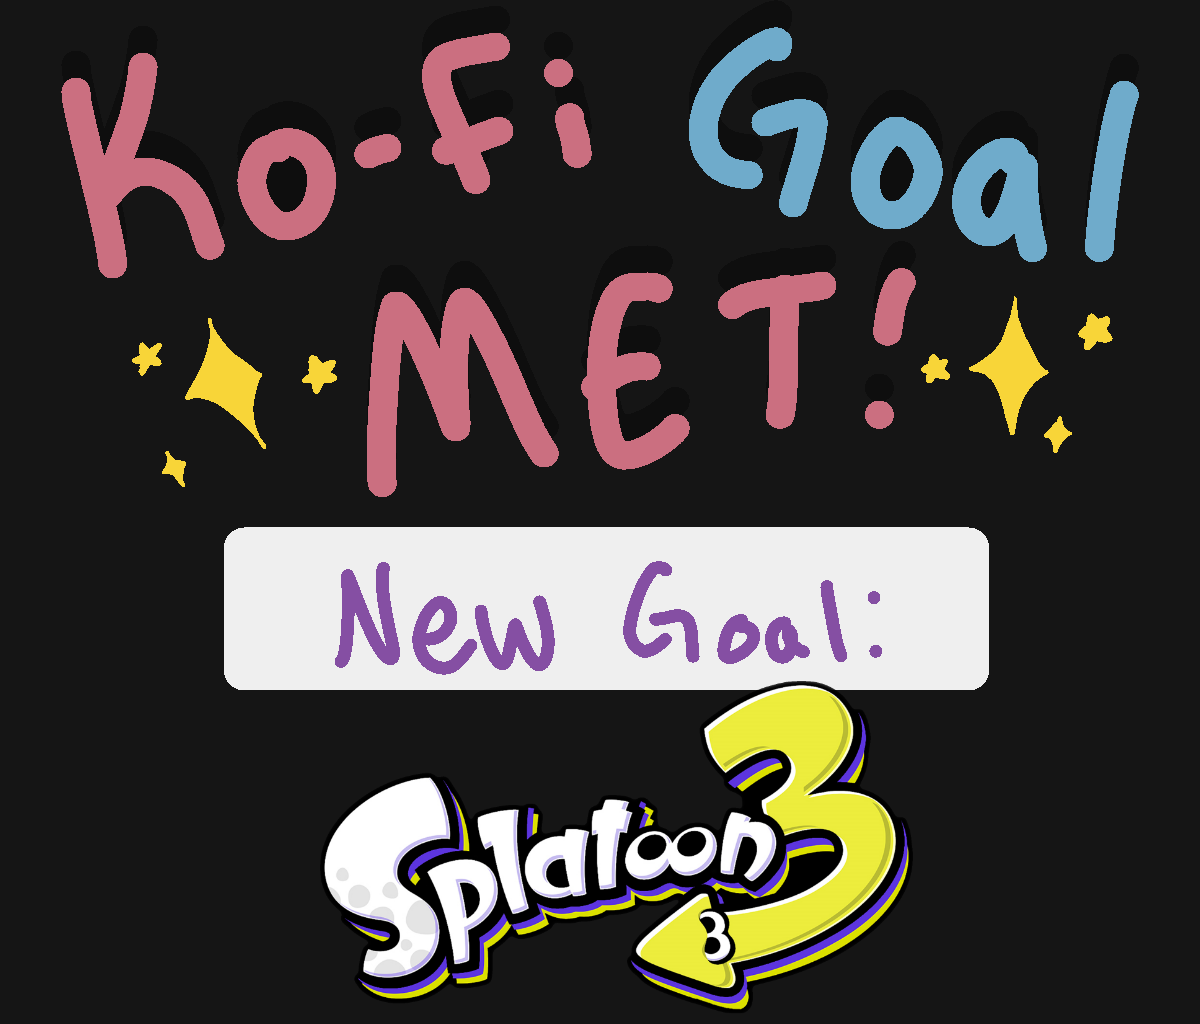 Goal met! New goal: Splatoon 3